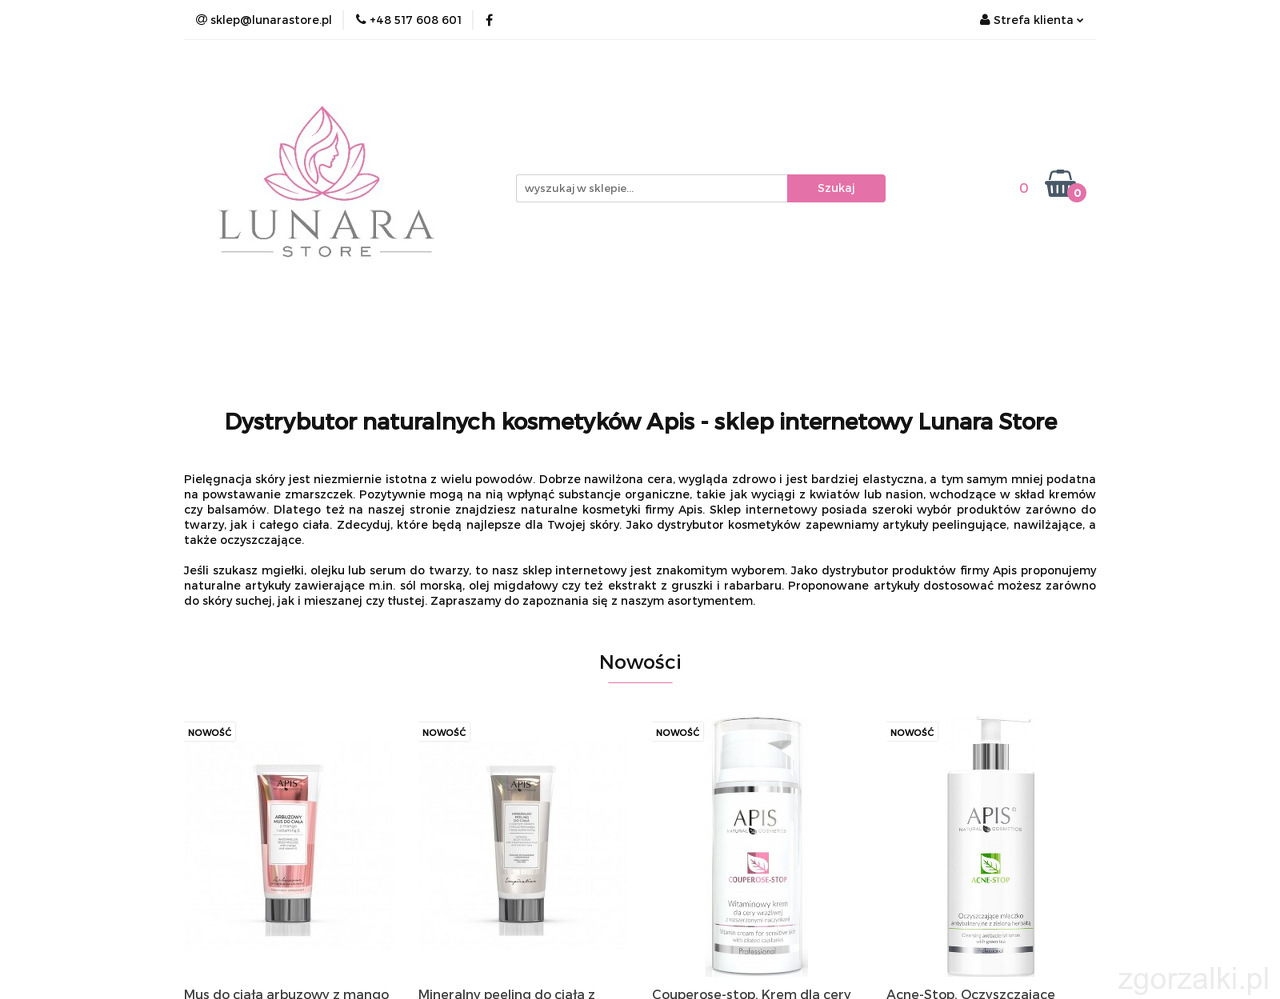 Lunara Store